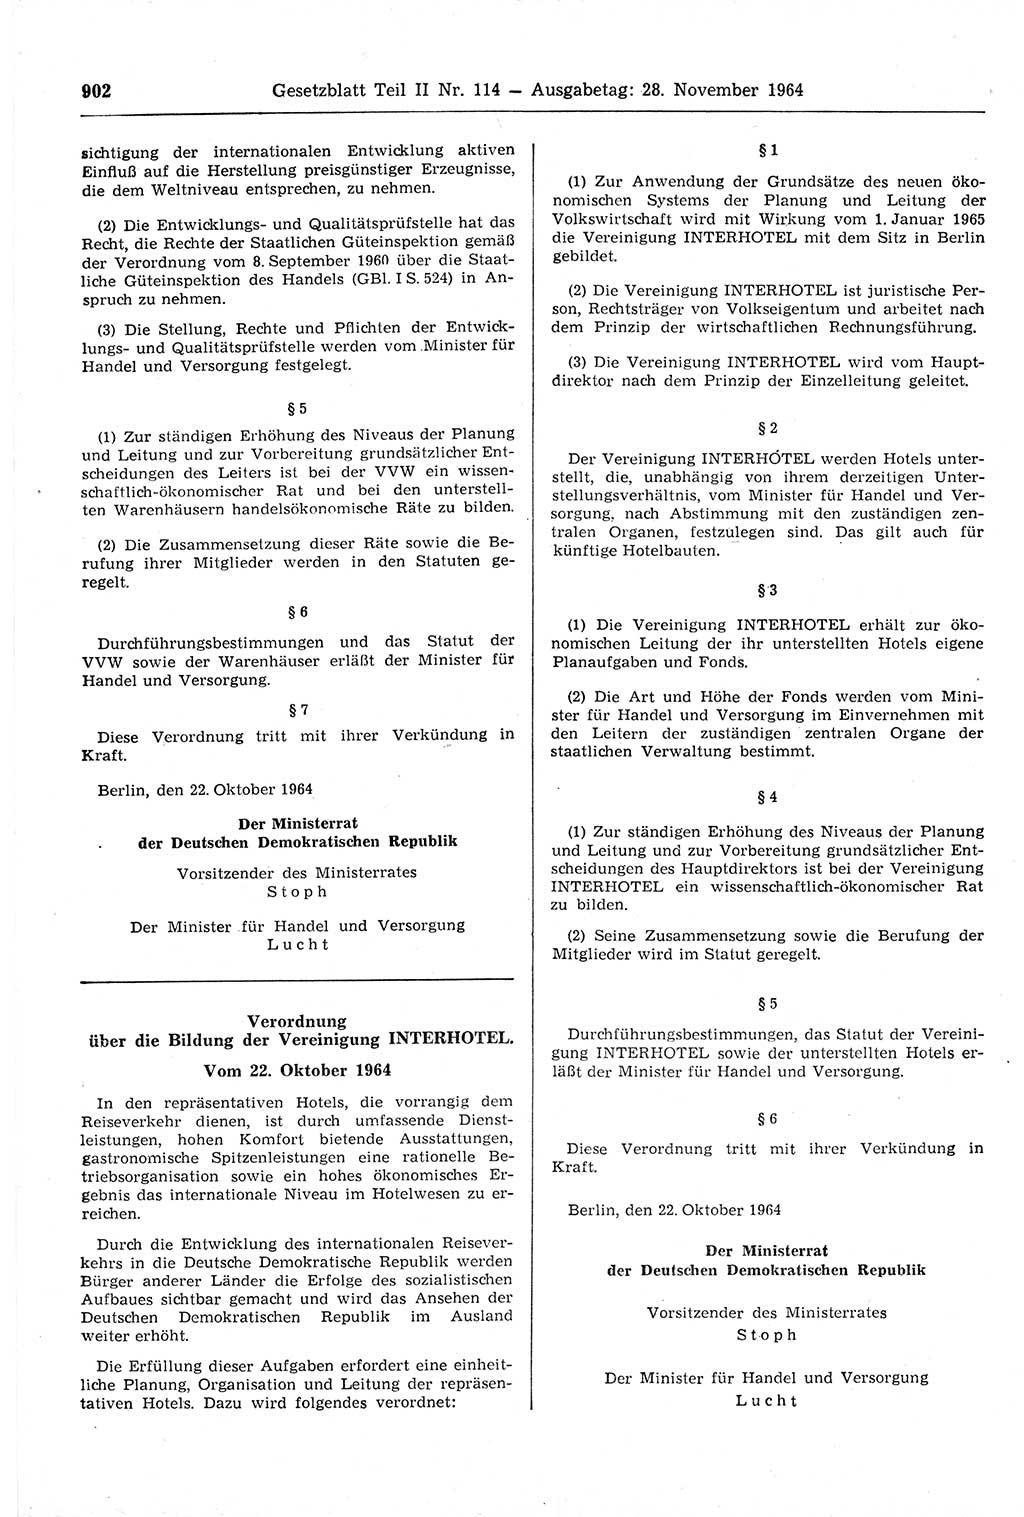 Gesetzblatt (GBl.) der Deutschen Demokratischen Republik (DDR) Teil ⅠⅠ 1964, Seite 902 (GBl. DDR ⅠⅠ 1964, S. 902)